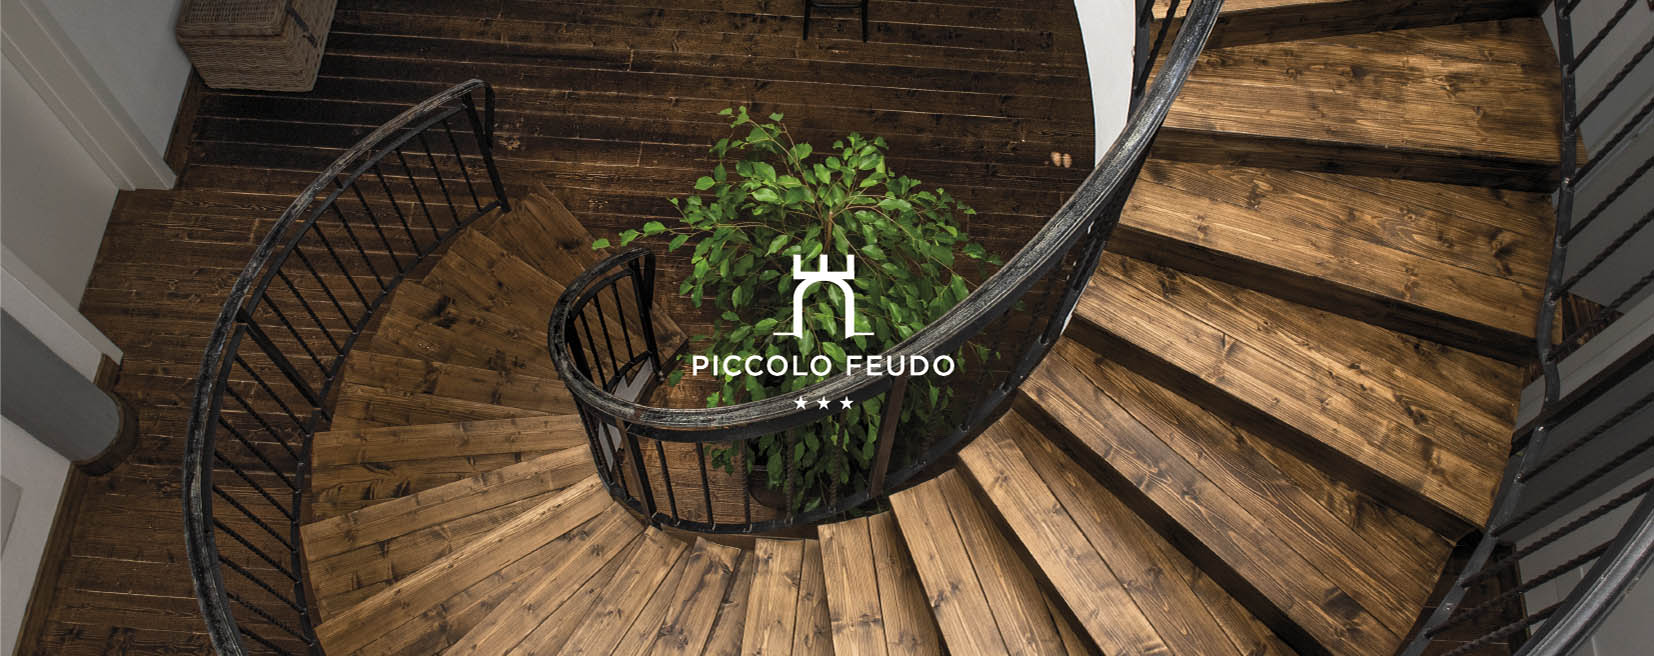 Brand Identity - Hotel Piccolo Feudo